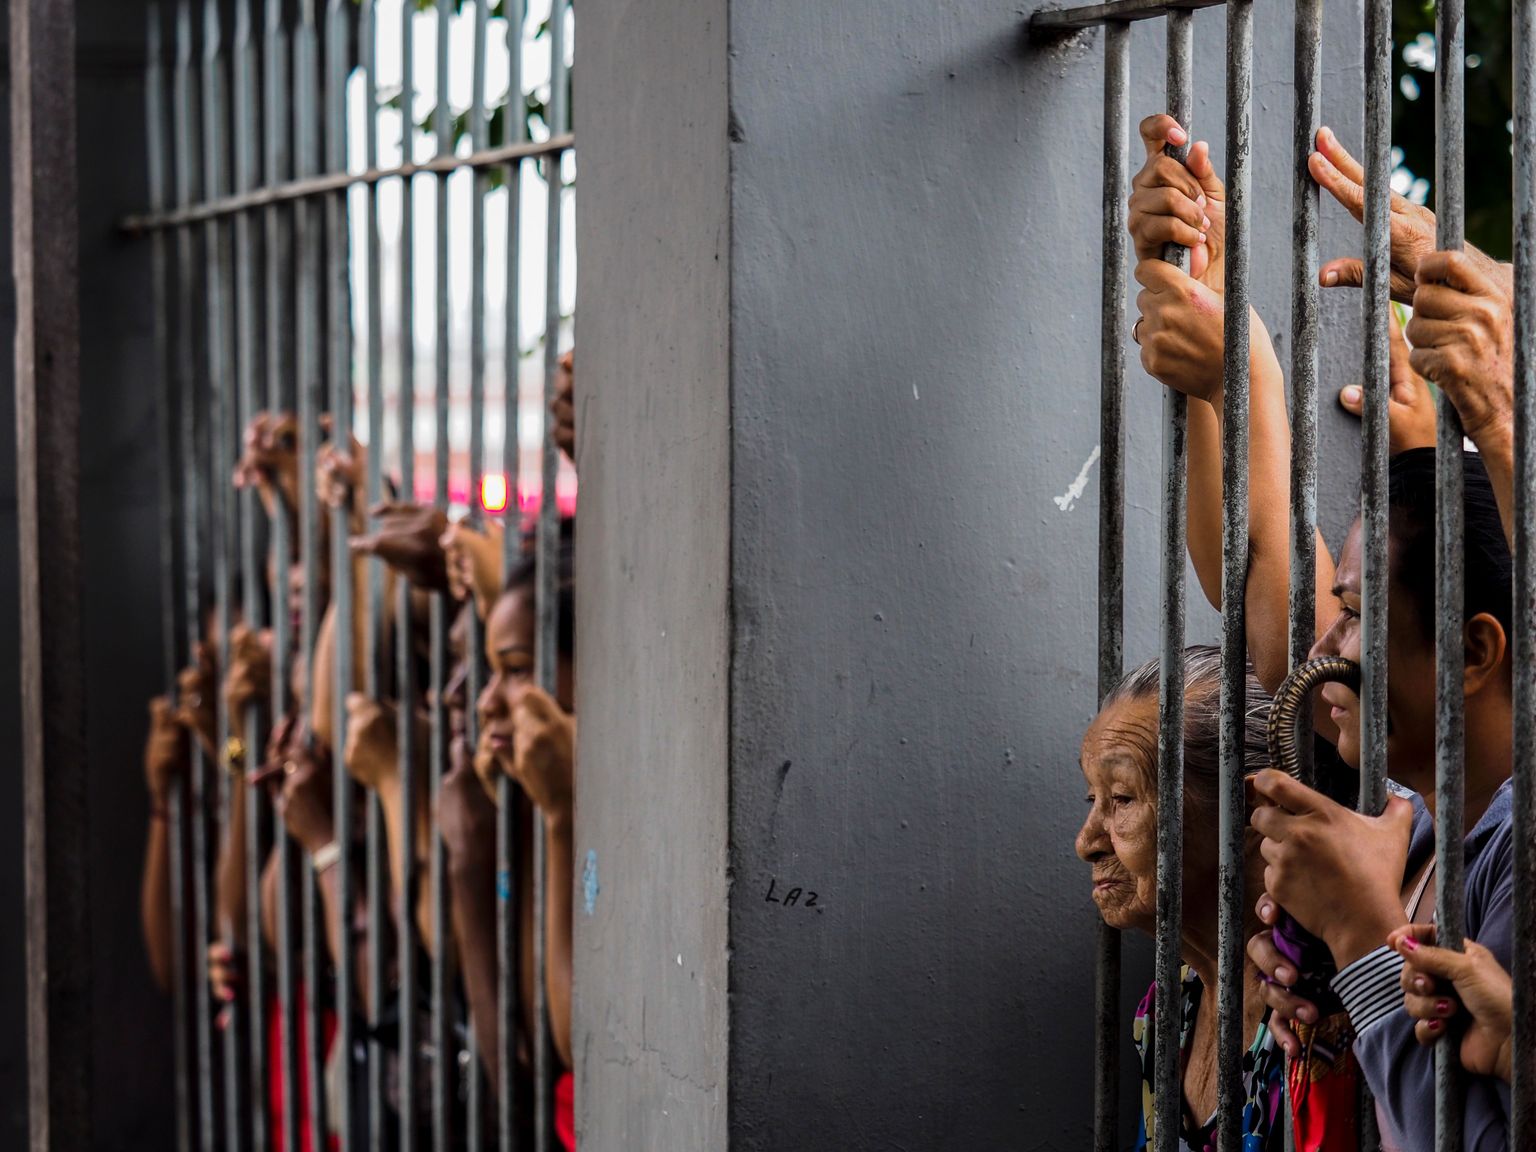 Sugulased Brasiilias Amazonase vanglas ootamas teateid lähedastest. Ühe nädala jooksul tapeti vanglates üle saja kurjategija.